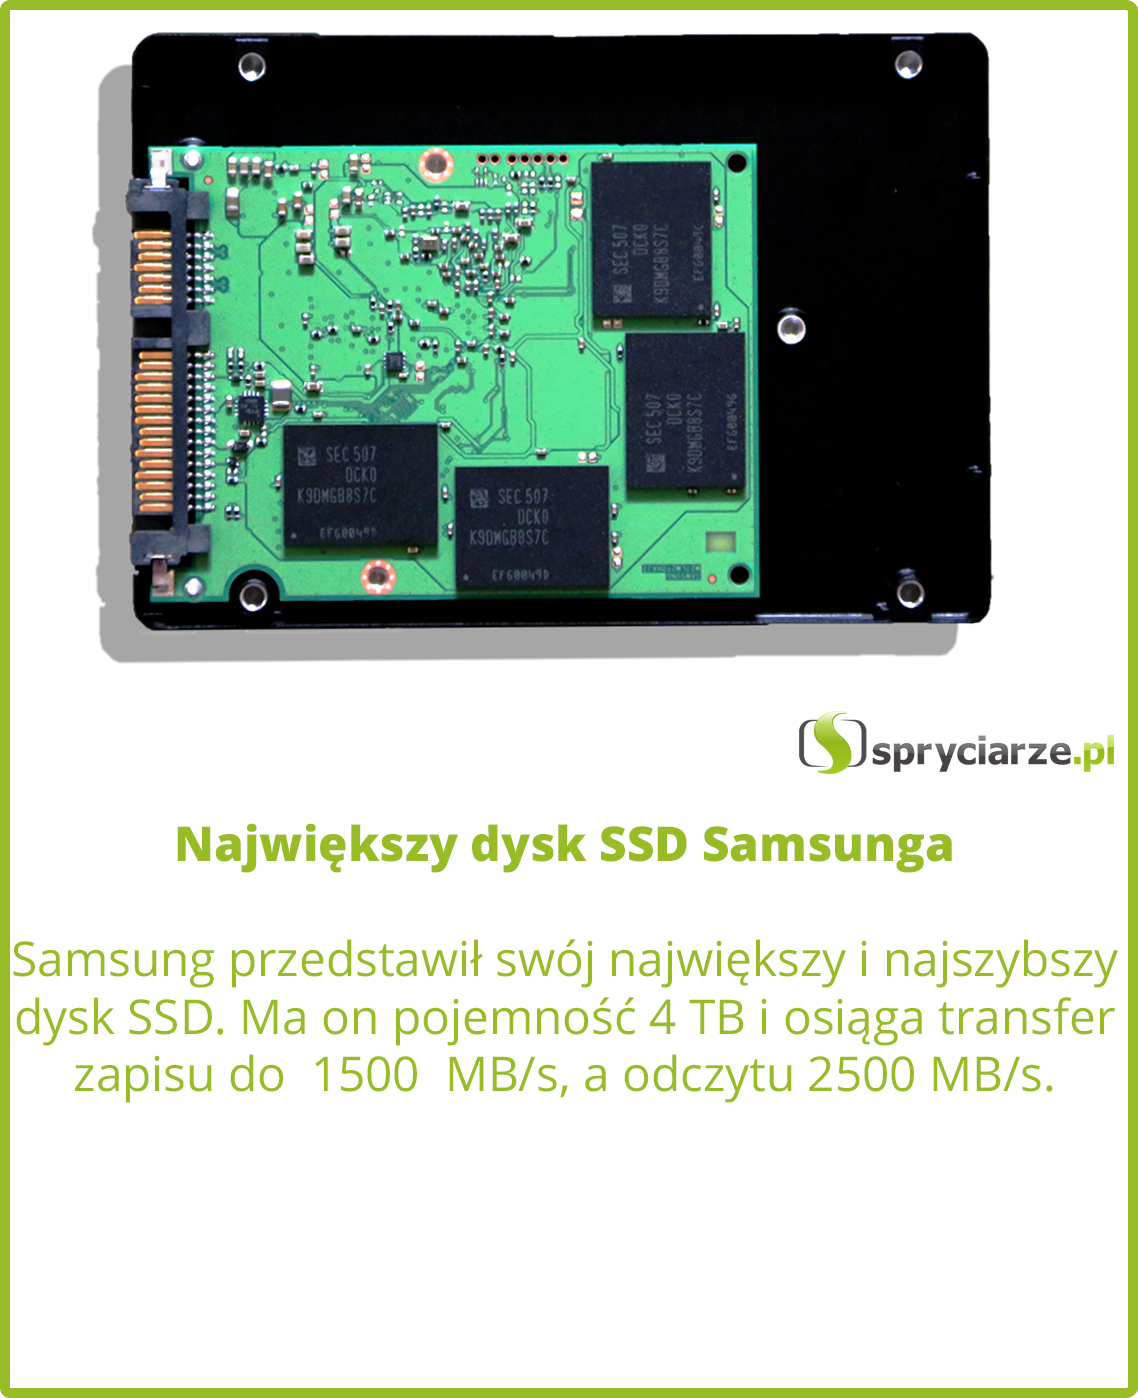 Największy dysk SSD Samsunga